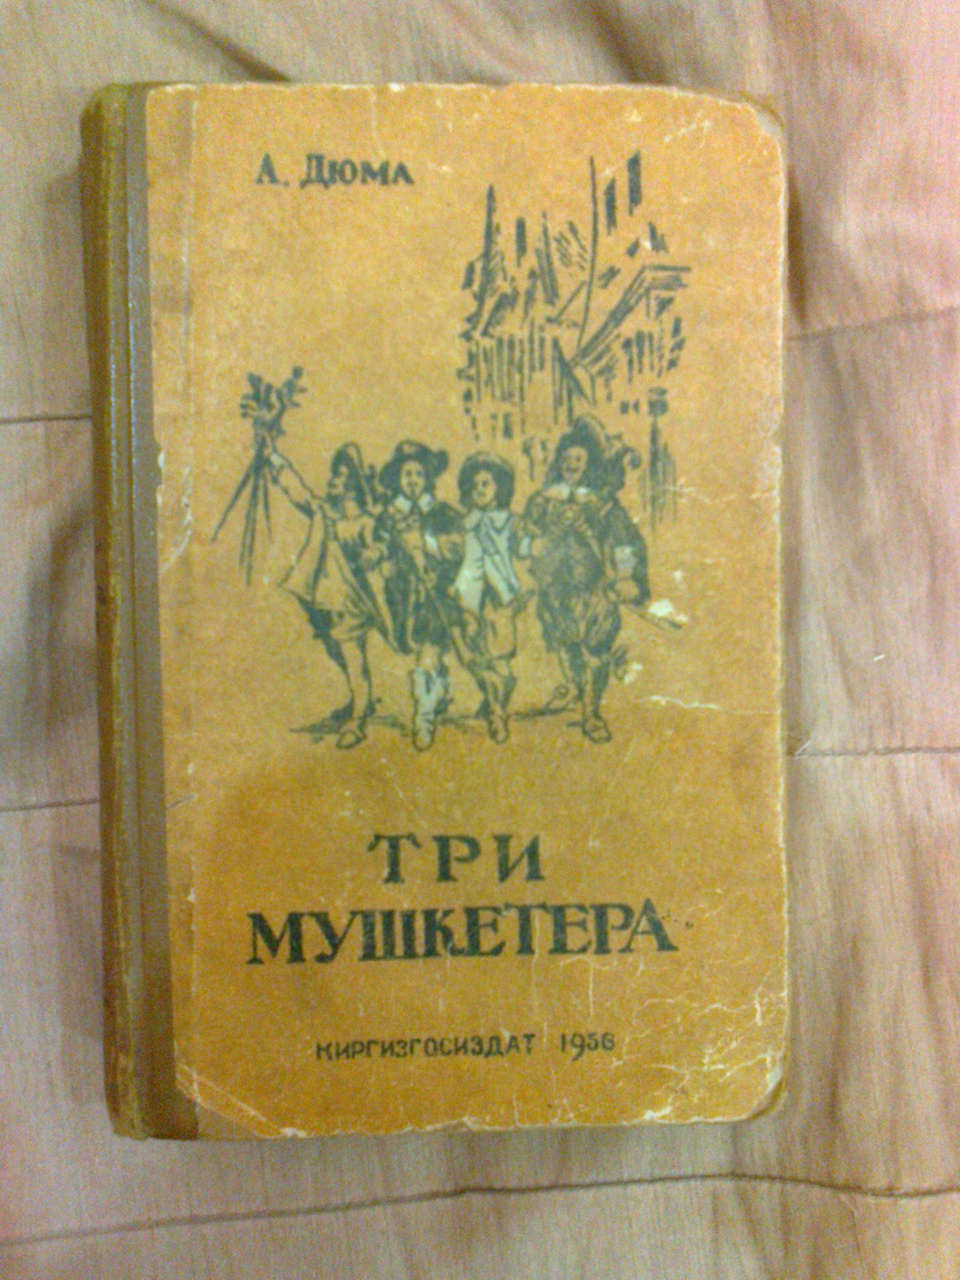 А.Дюма "Три мушкетёра" изд.1956 года